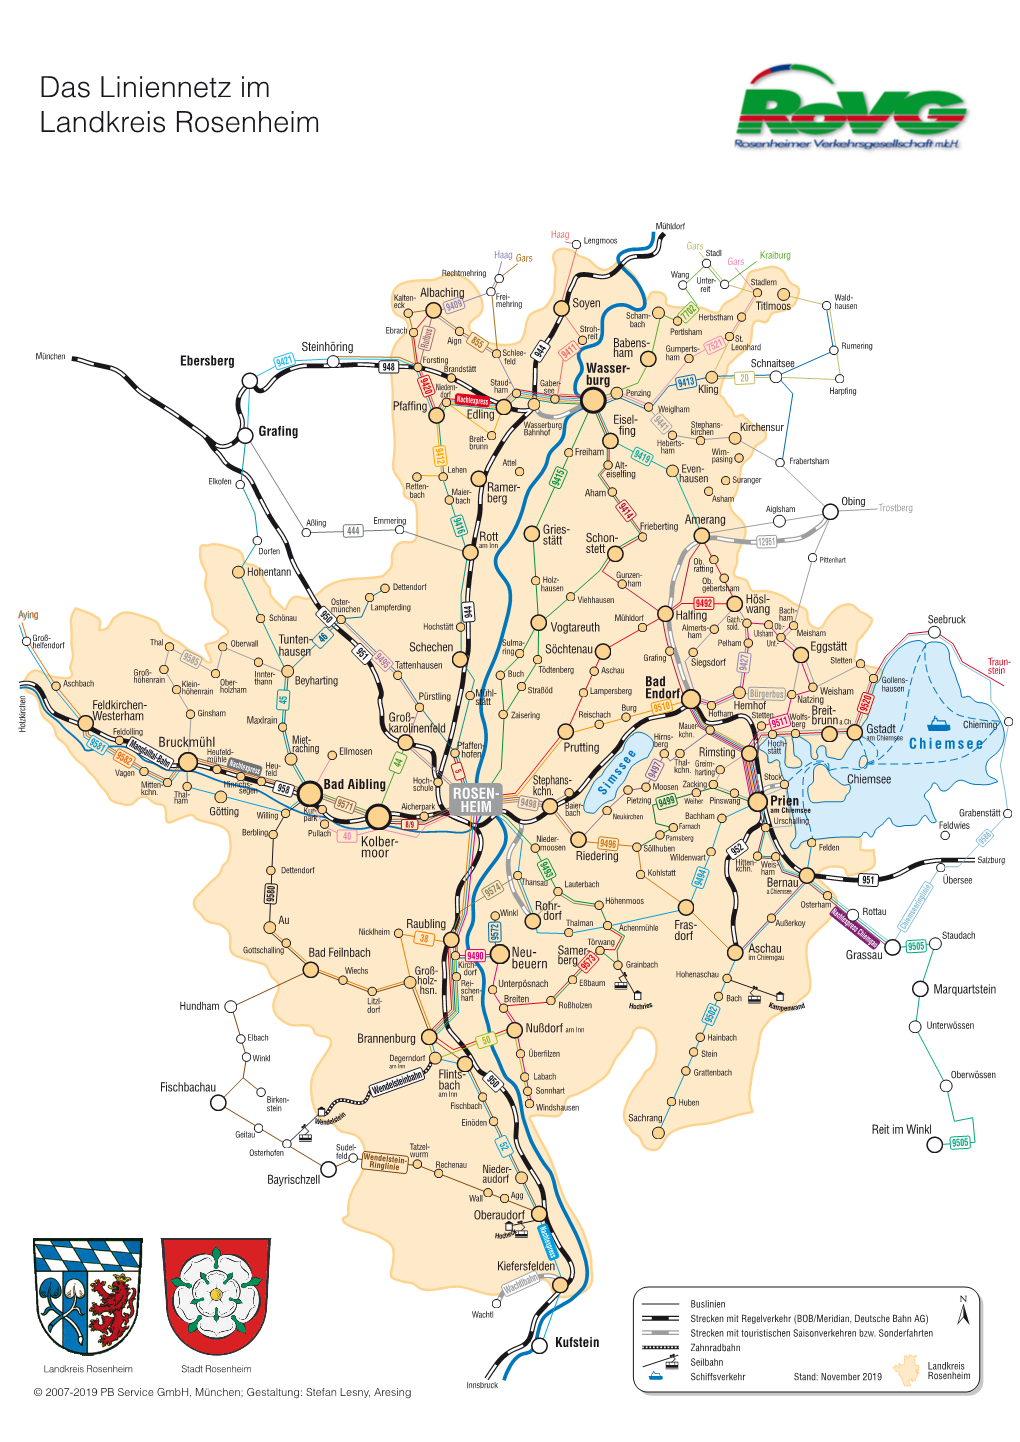 Das Liniennetz Im Landkreis Rosenheim